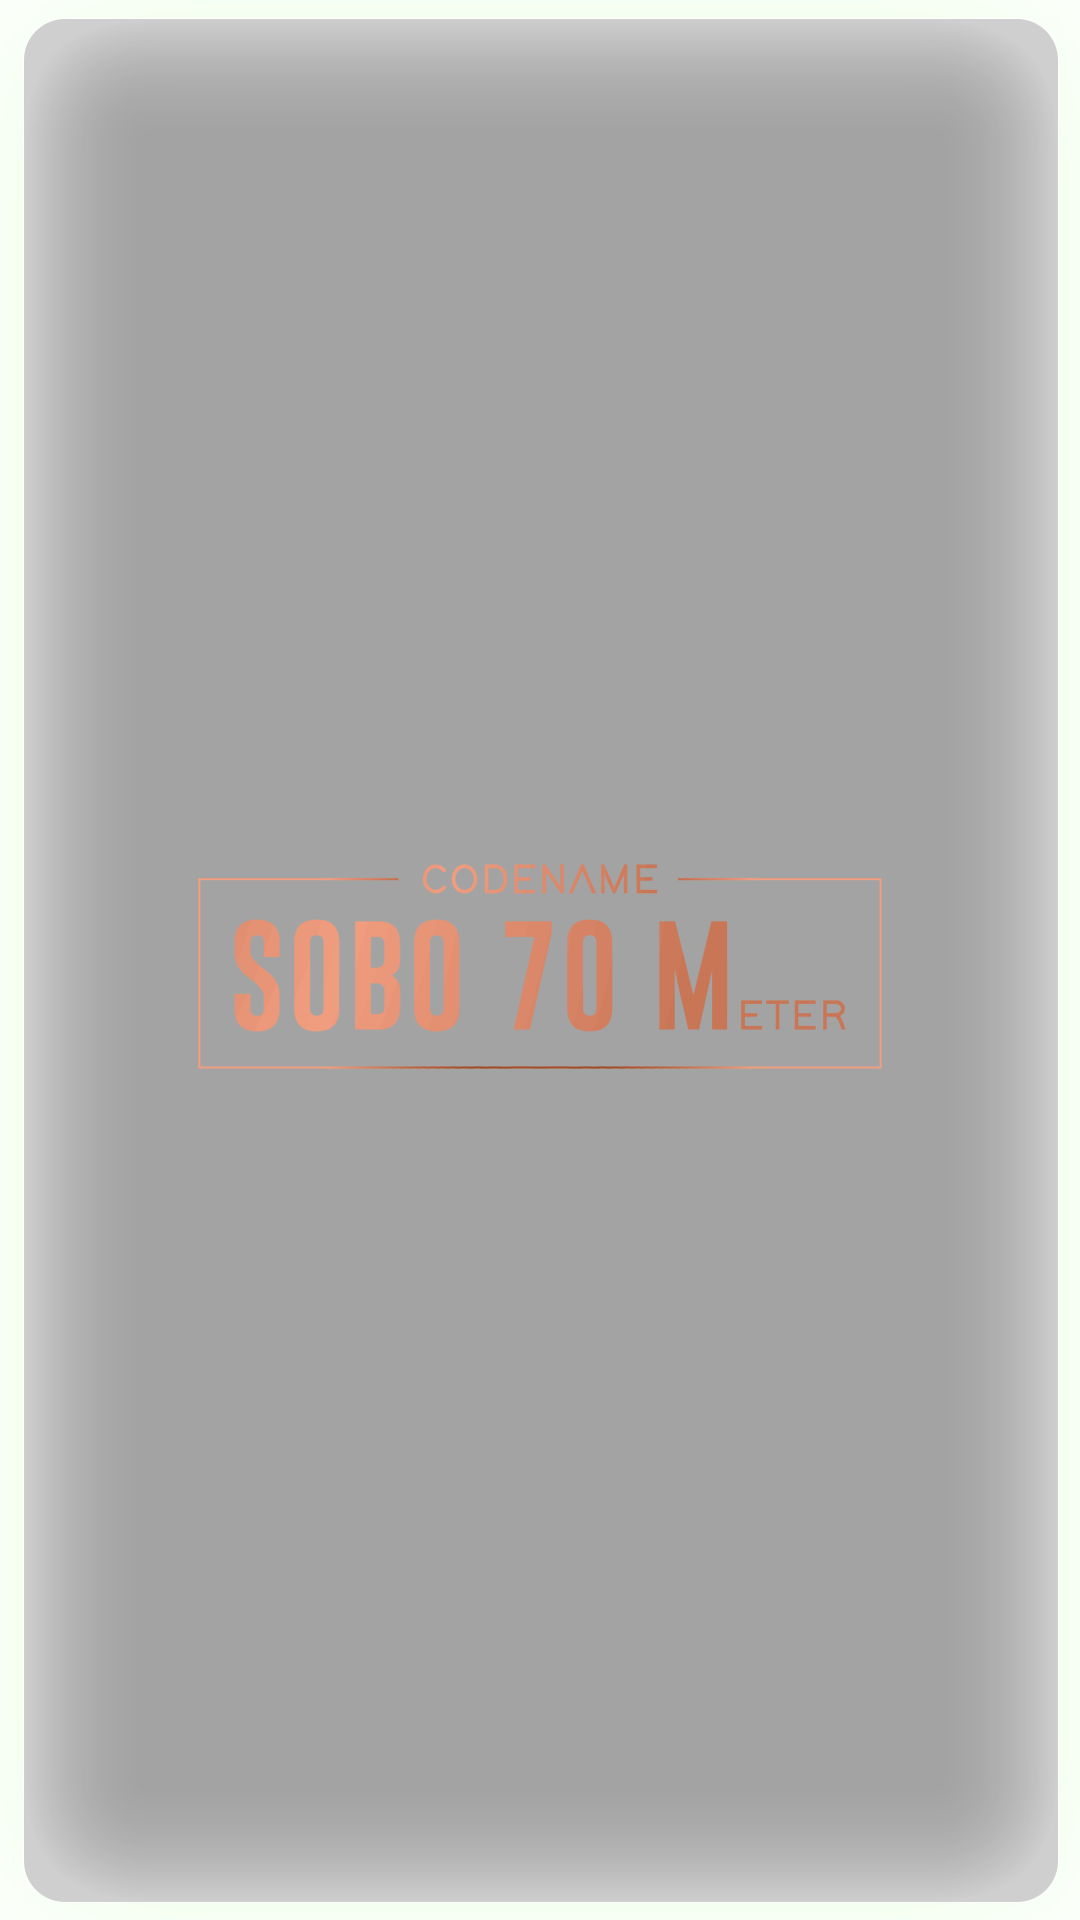 SOBO 70 M